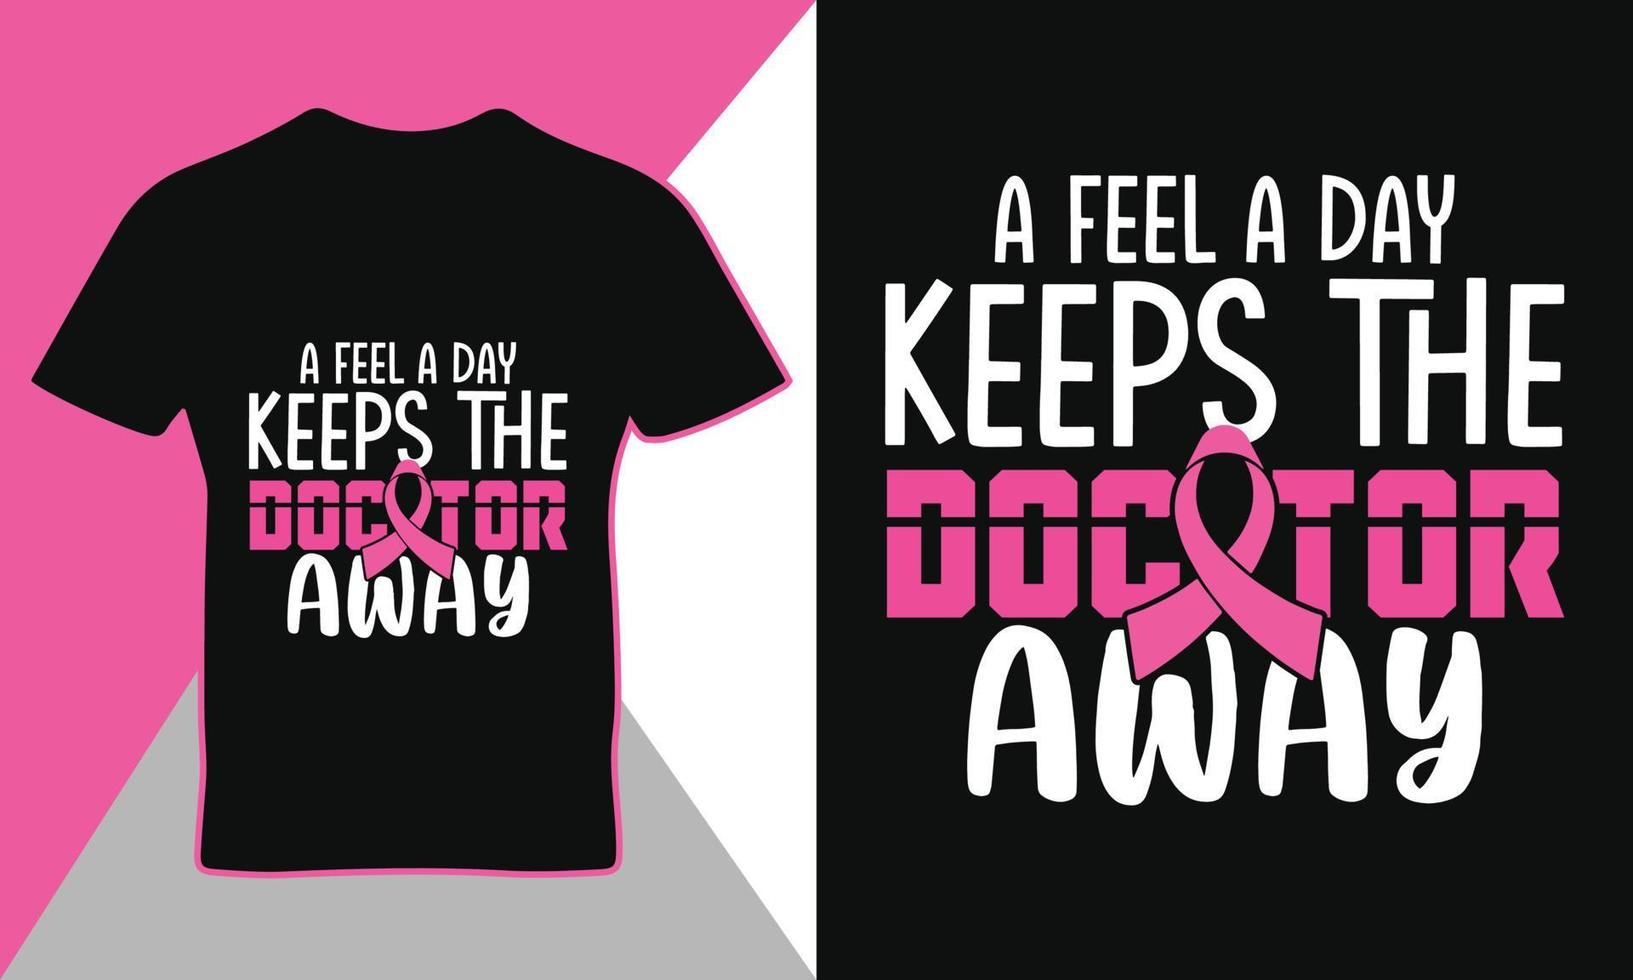 borst kanker bewustzijn citaat typografie t-shirt ontwerp sjabloon vector